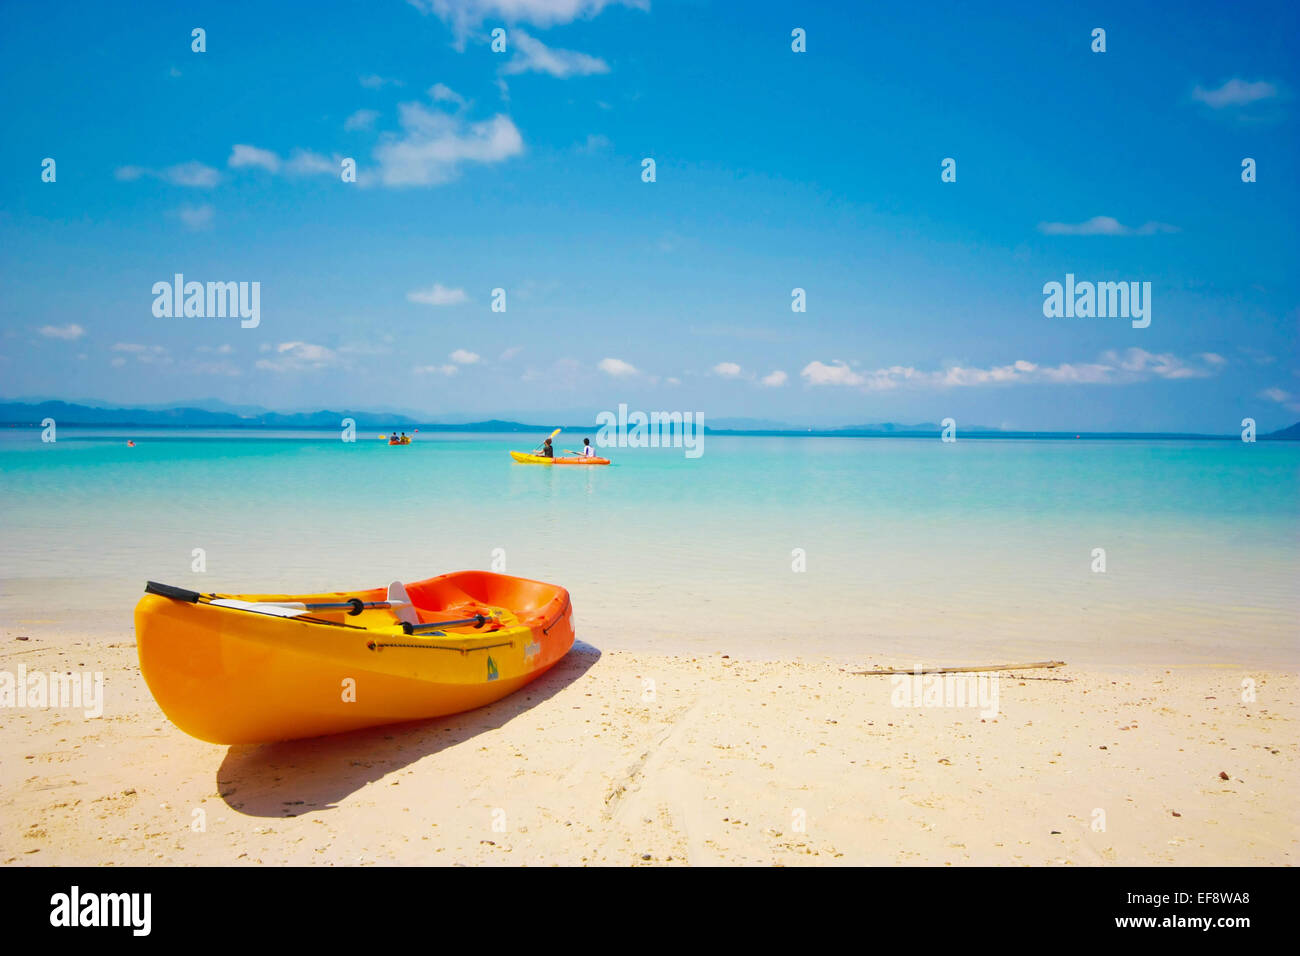 Thailand, Kayak on beach Stock Photo